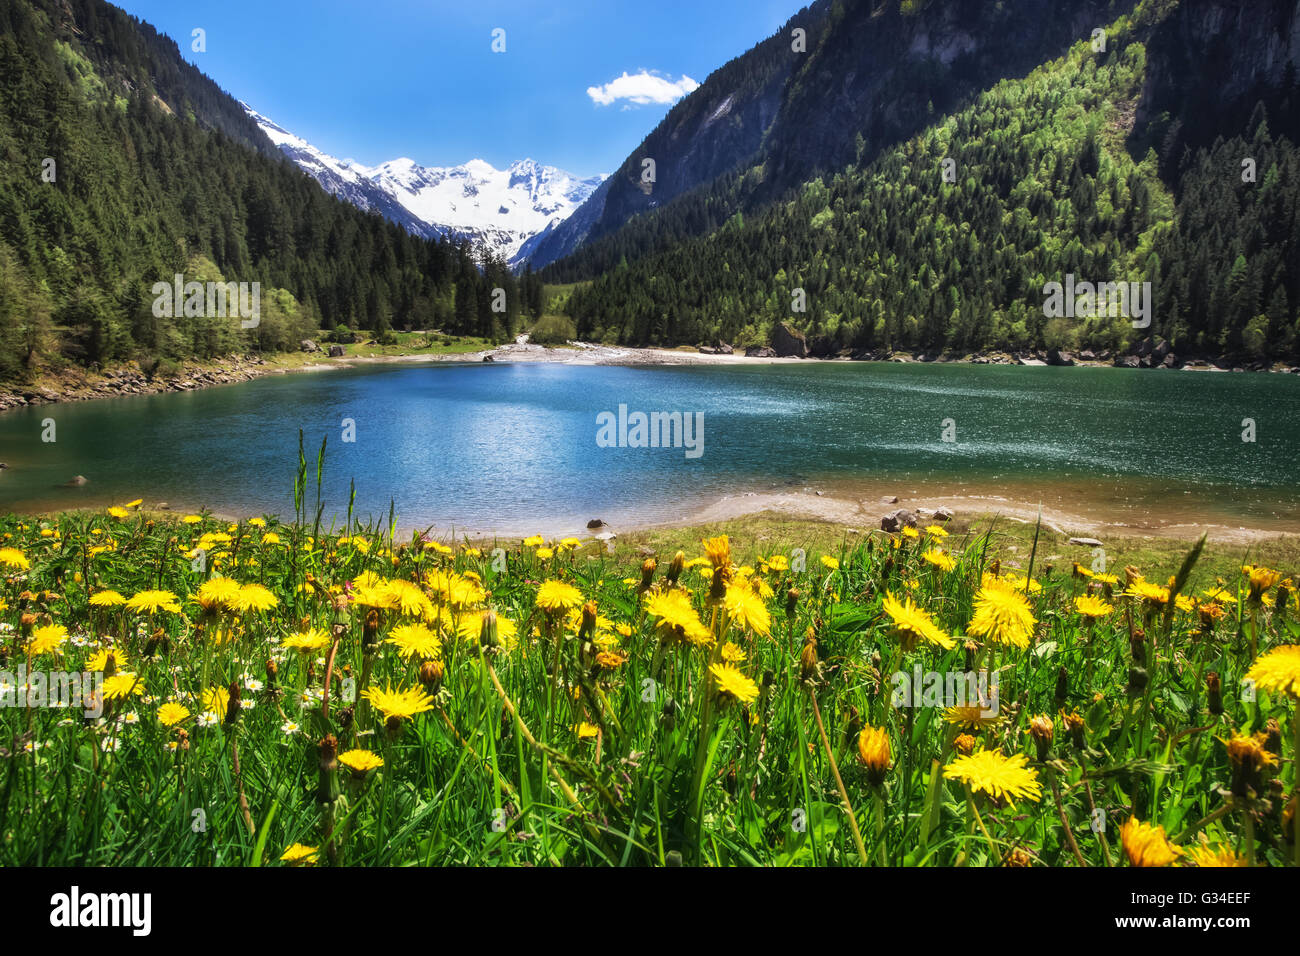 Pré alpin avec de belles fleurs de pissenlit près d'un lac dans les montagnes. Stilluptal, Autriche, Tyrol. Banque D'Images